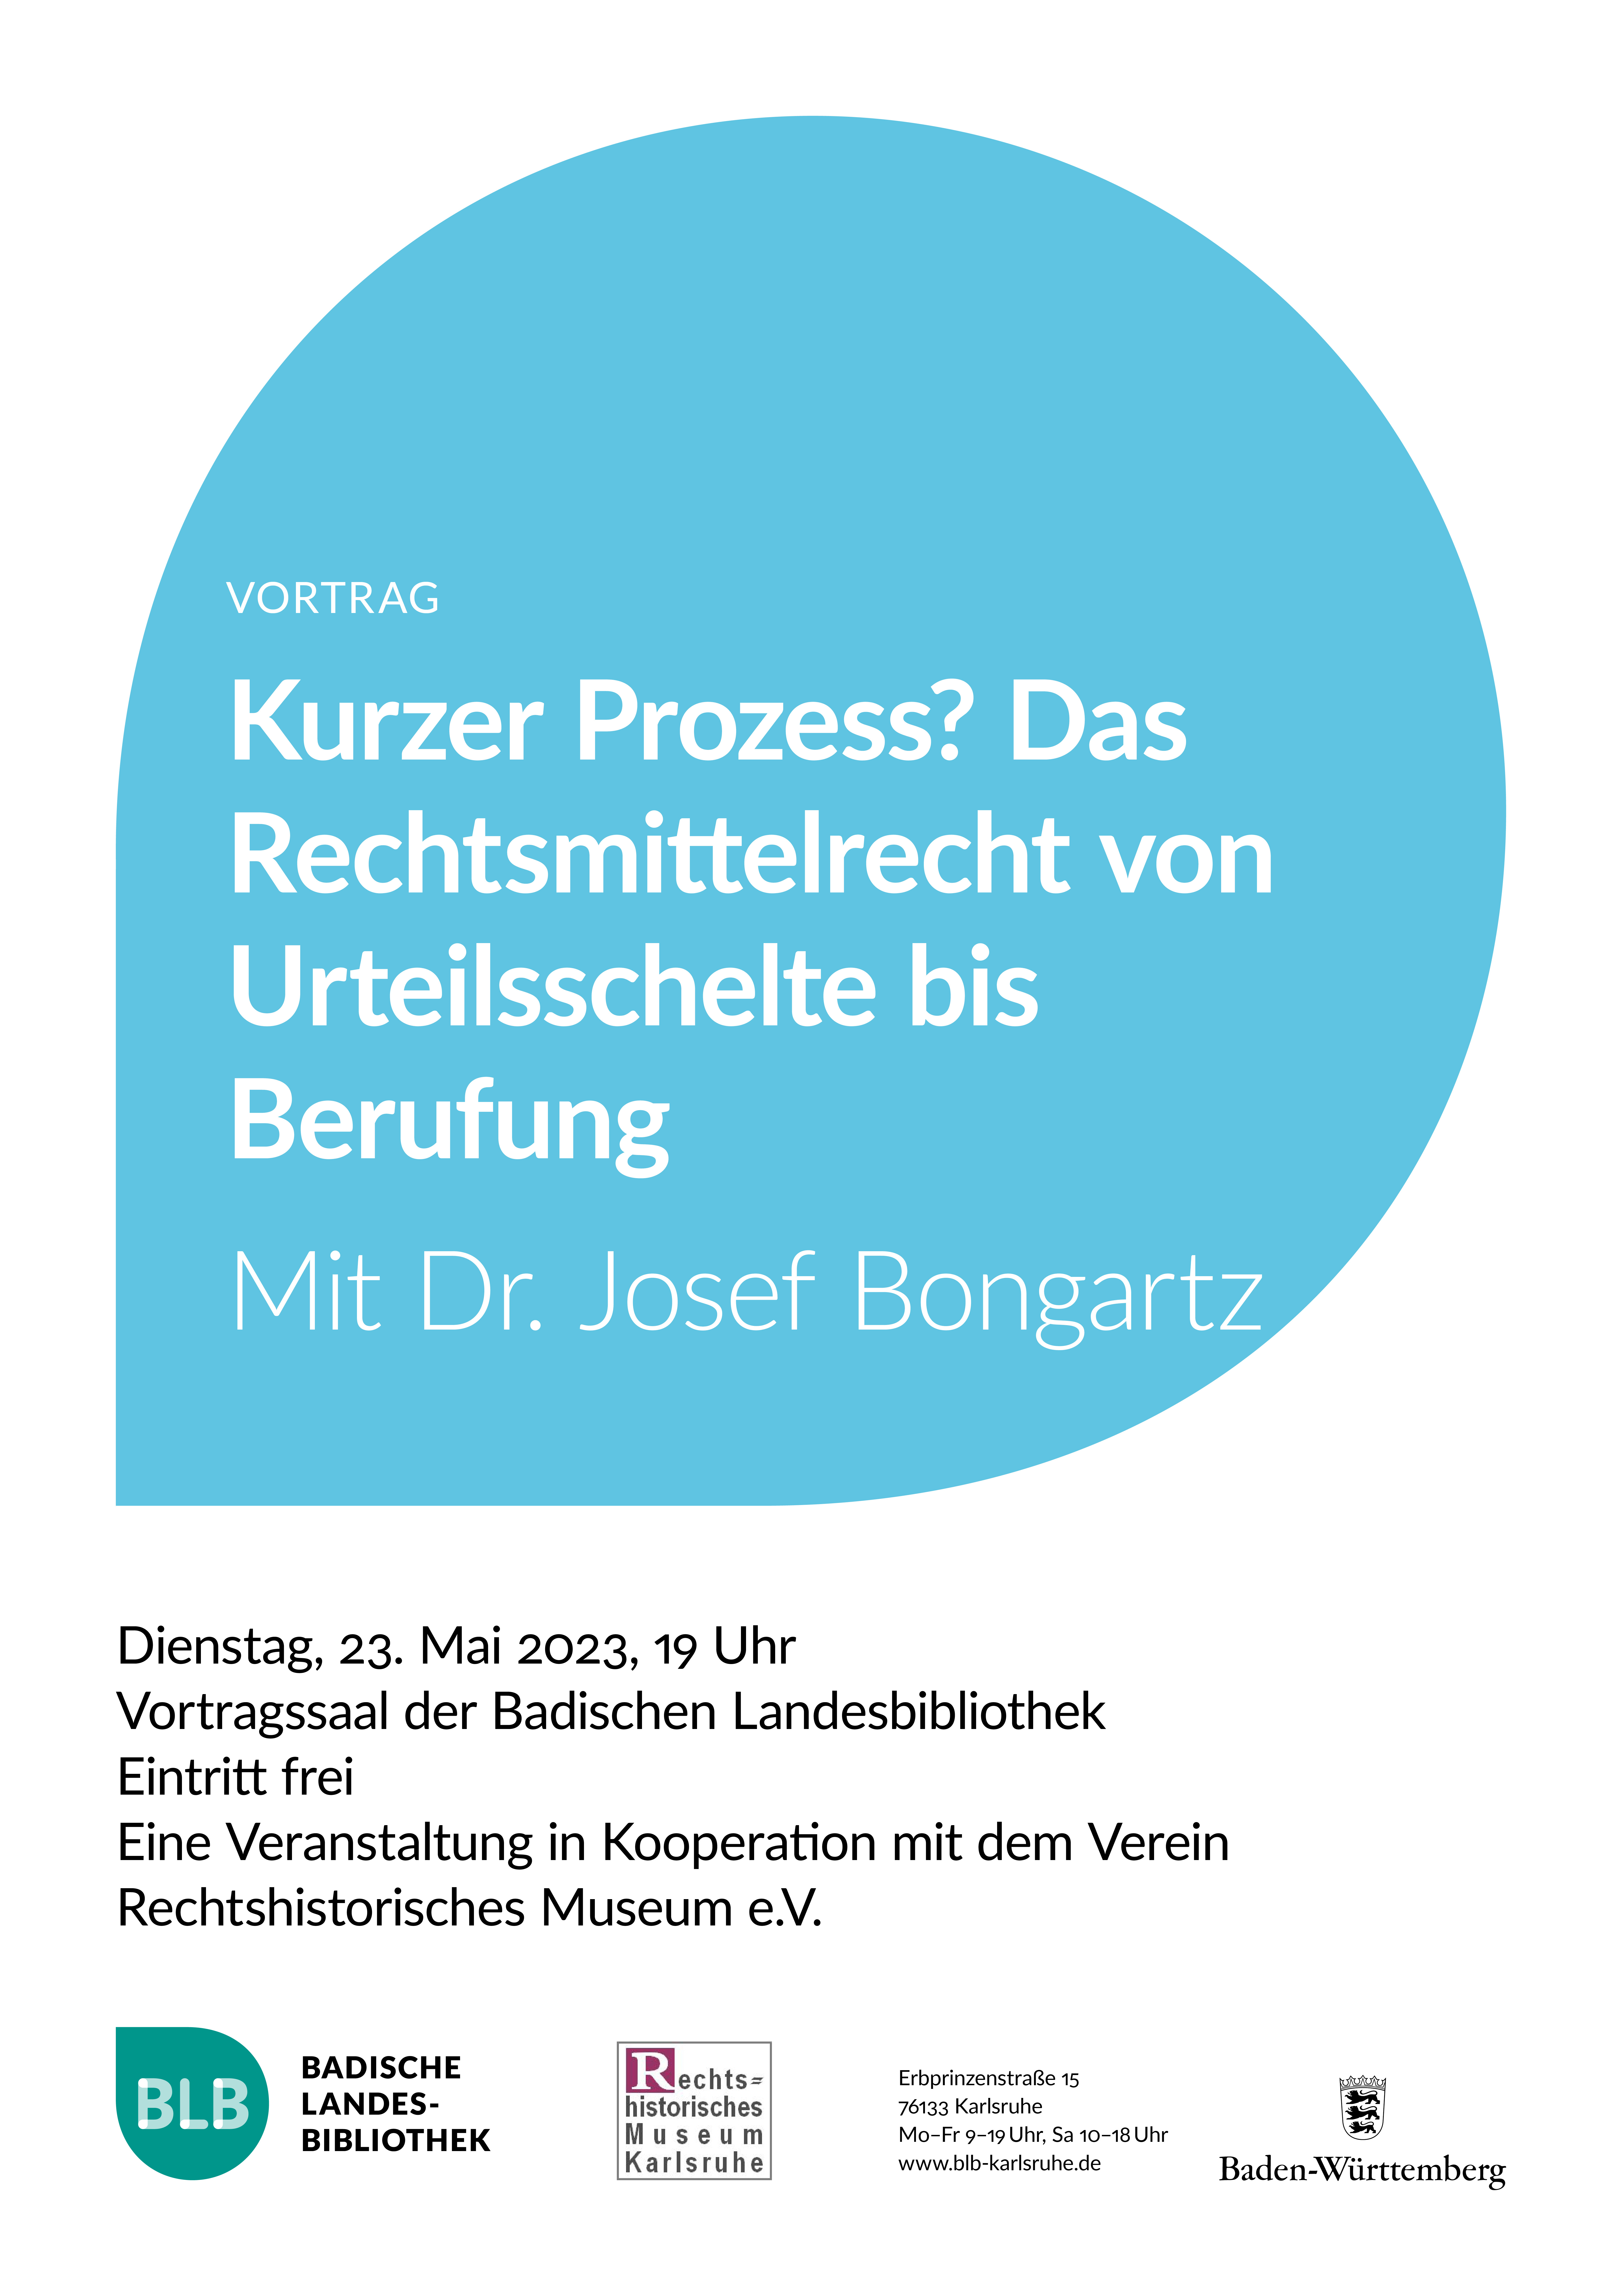 Zu sehen ist ein blaues Monogon mit der Aufschrift "Kurzer Prozess? Das Rechtsmittelrecht von Urteilsschelte bis Berufung". Der Vortrag mit Doktor Josef Bongartz findet am Dienstag, den 23. Mai 2023 um 19 Uhr statt. 